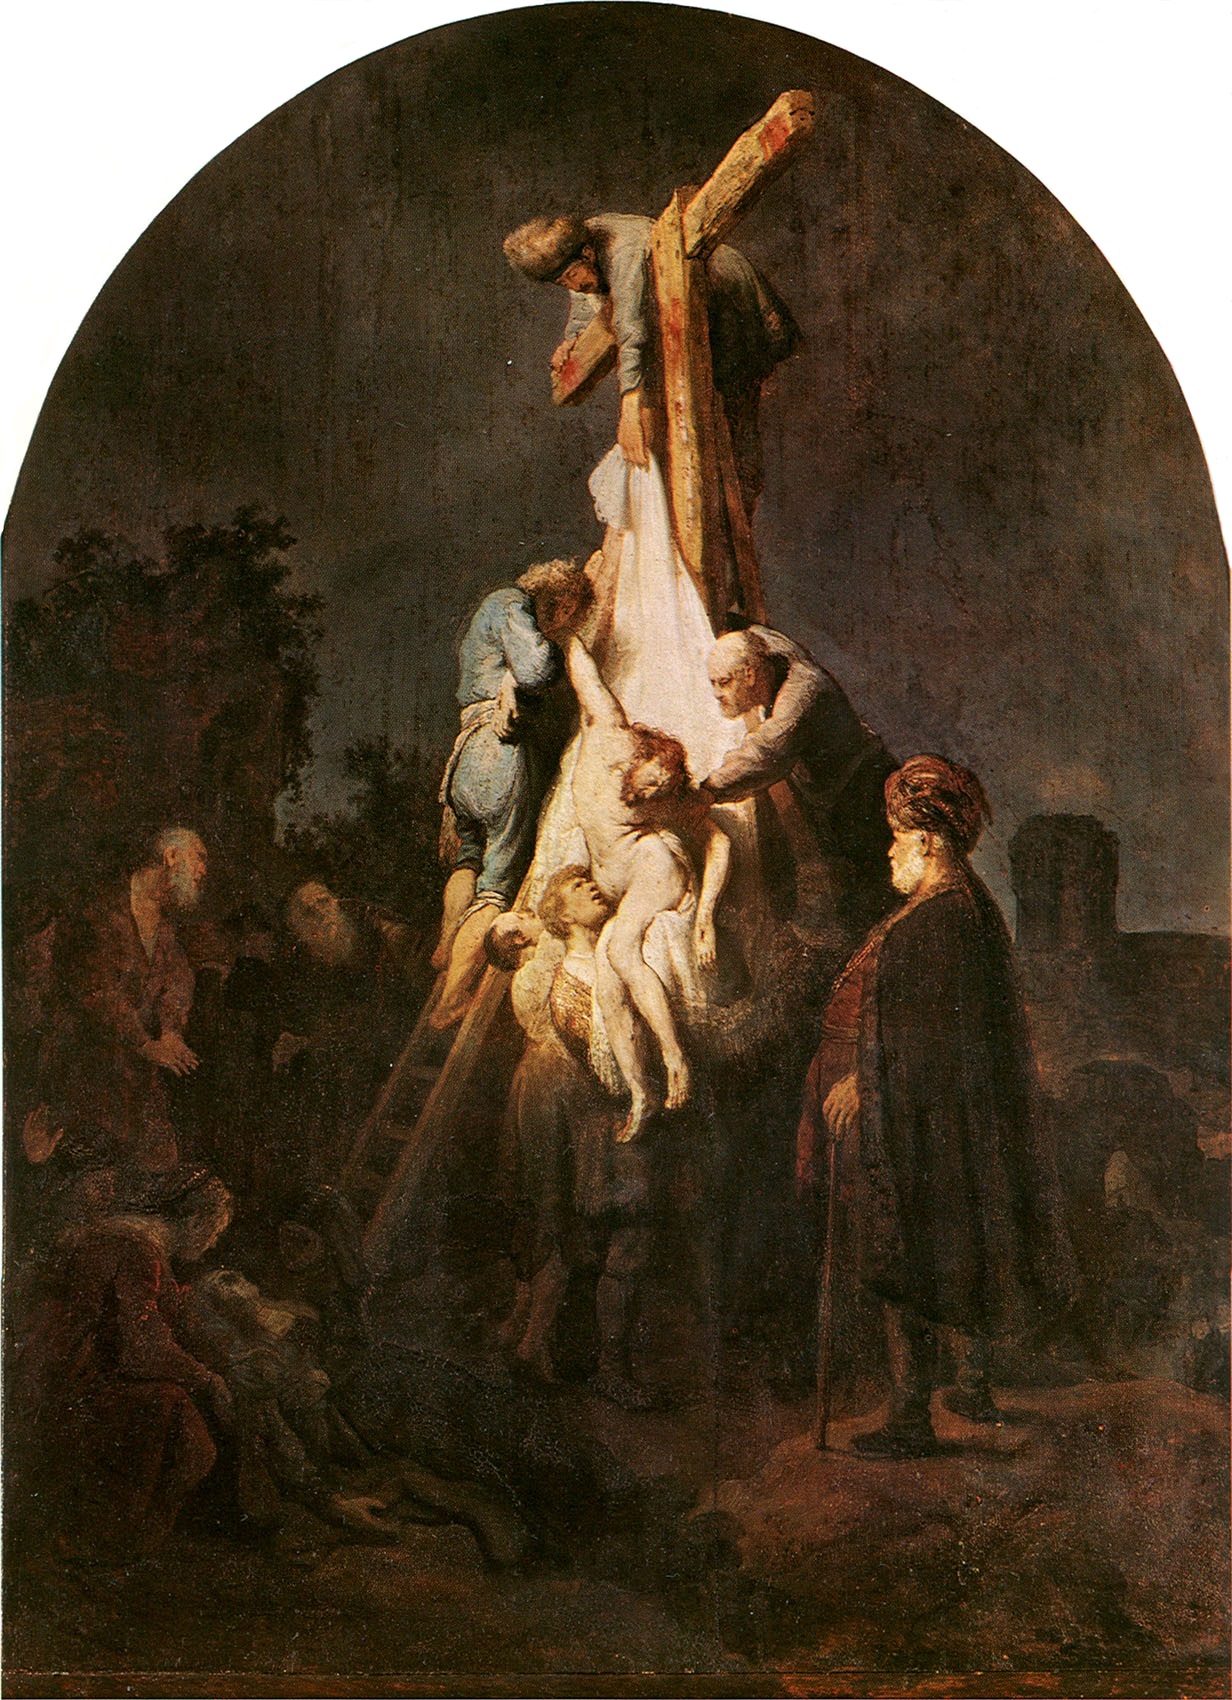 Рембрандт Харменс ван Рейн. "Снятие с креста". 1633. Старая пинакотека, Мюнхен.